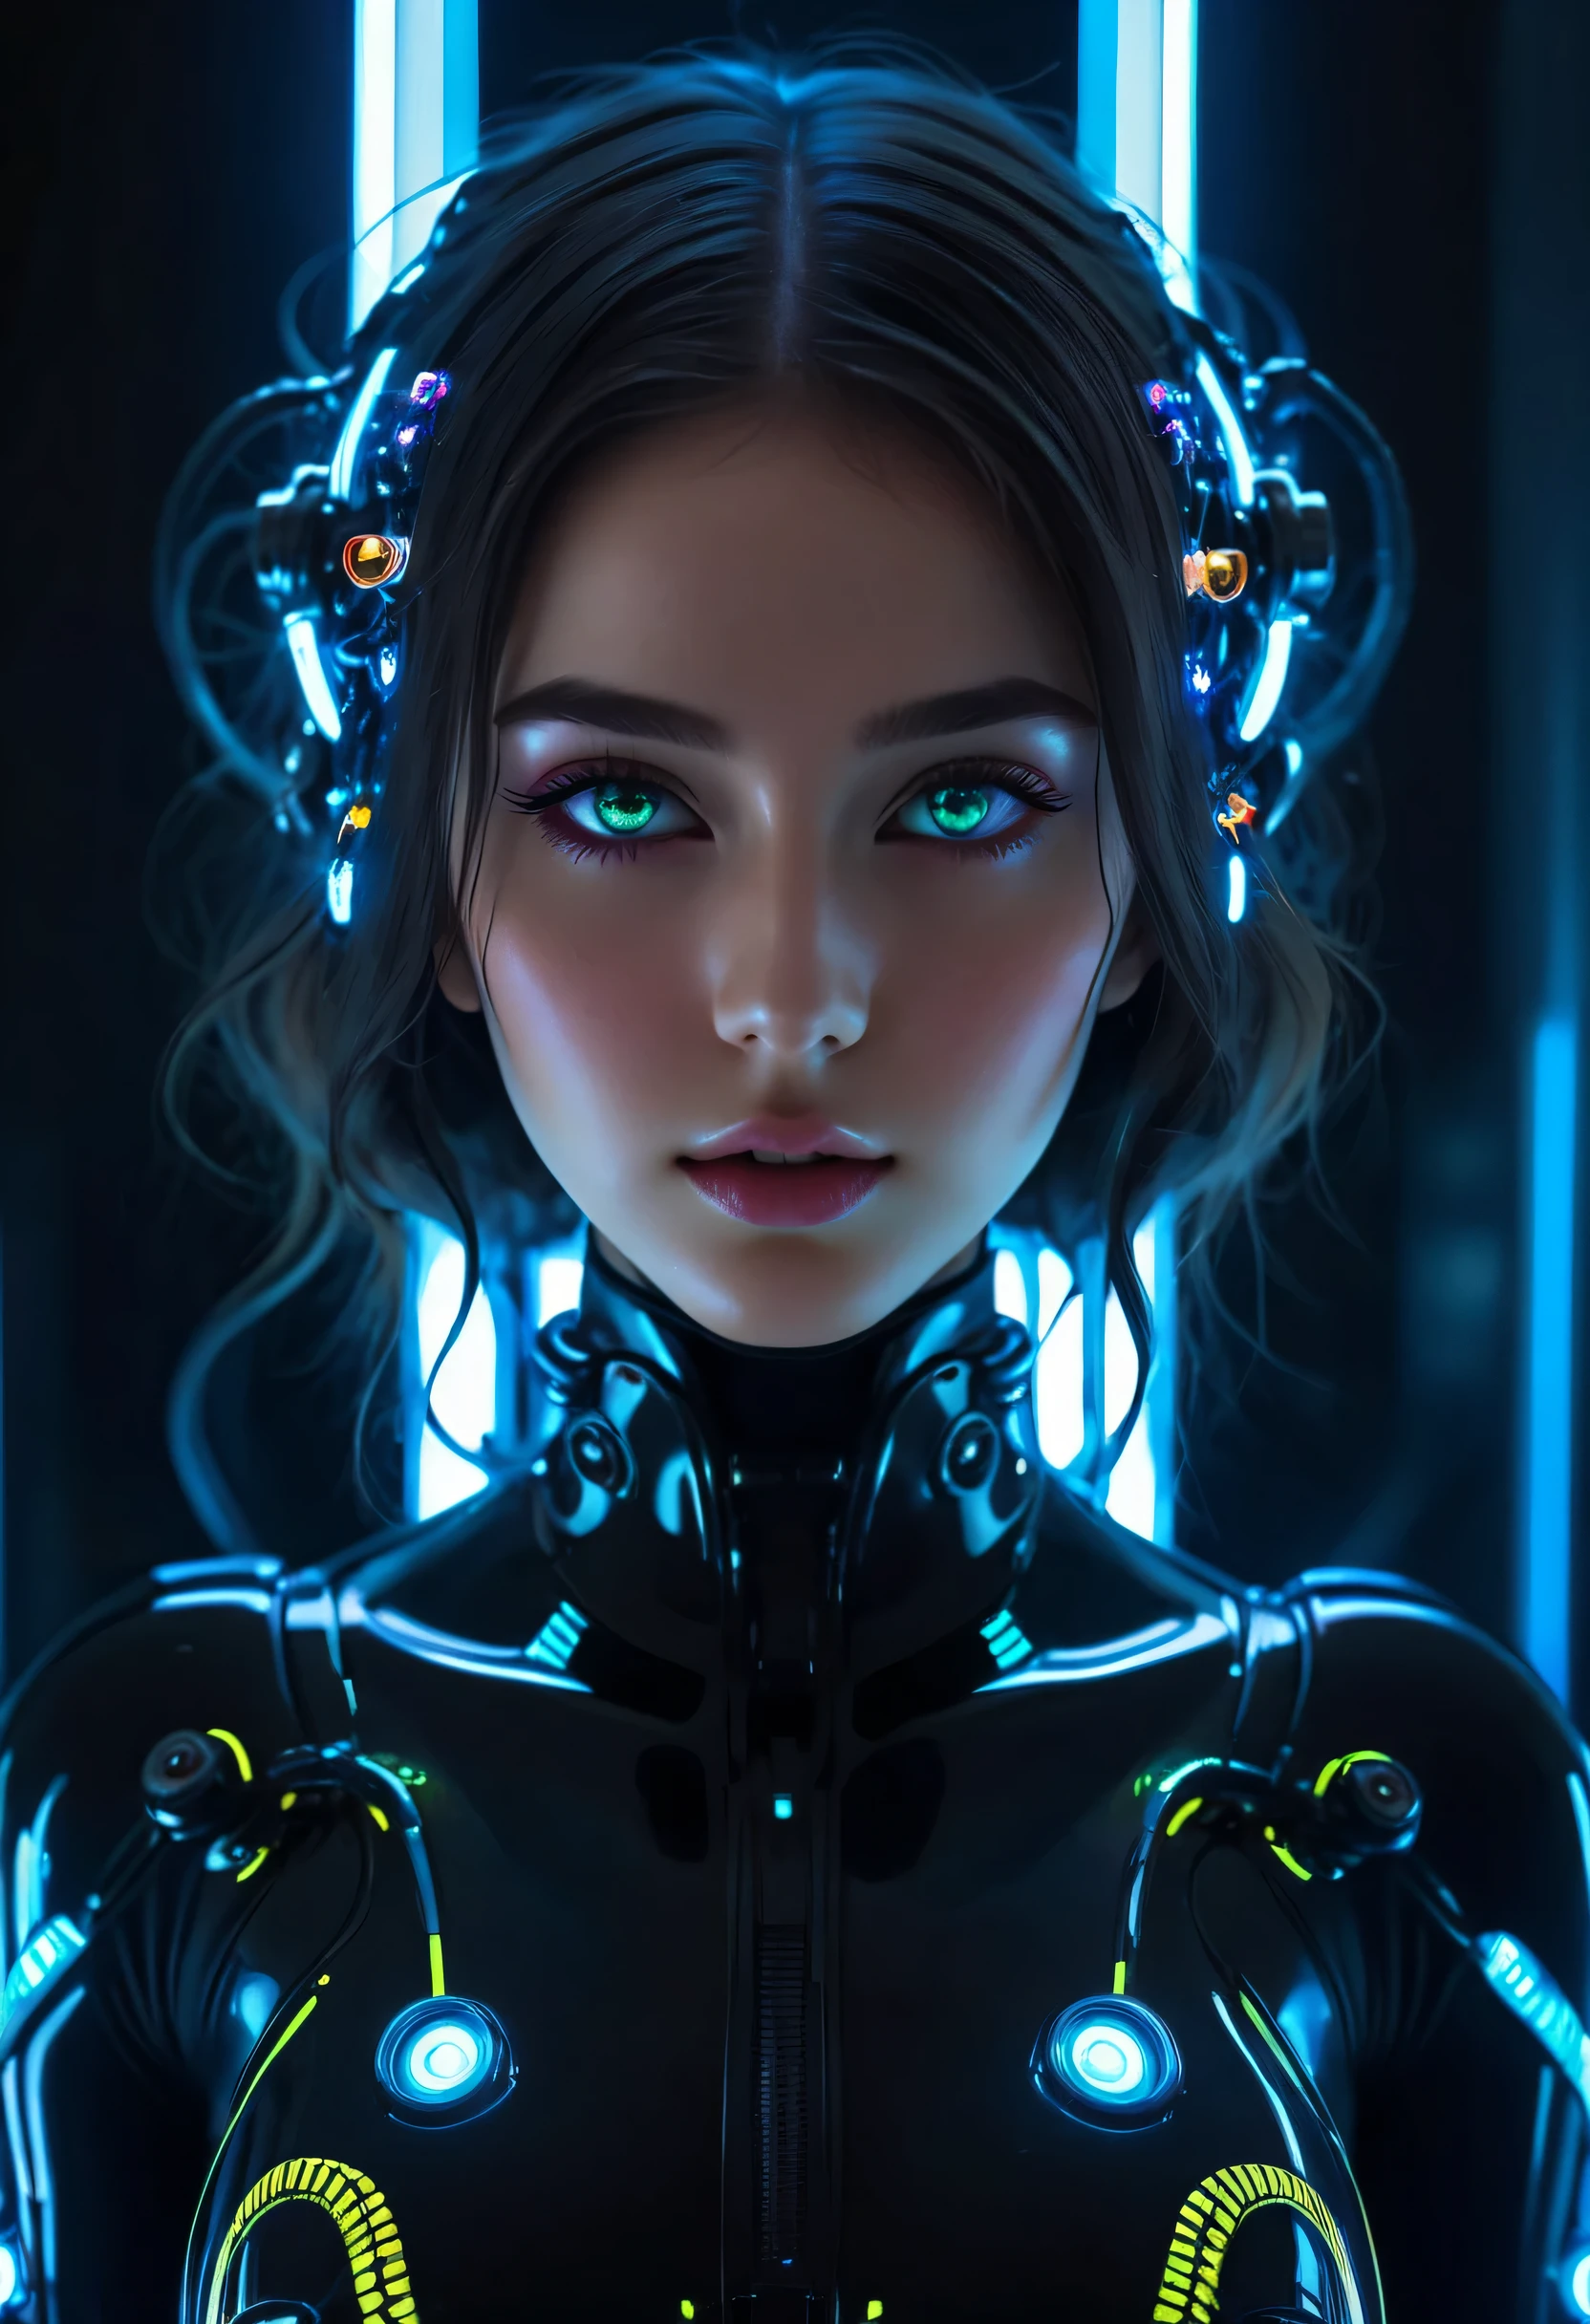 garota realista e intrincada beleza perfeita rosto, detalhado & olhos brilhantes de galáxia nítida e assimétrica perfeita, detalhado face, (((do rosto até a cintura))), (((forma de beleza))), ((em peças mecânicas de metal realistas de ficção científica com iluminação neon e tentáculos robóticos com luzes neon)), Obra de arte, 4K, Ultra HD